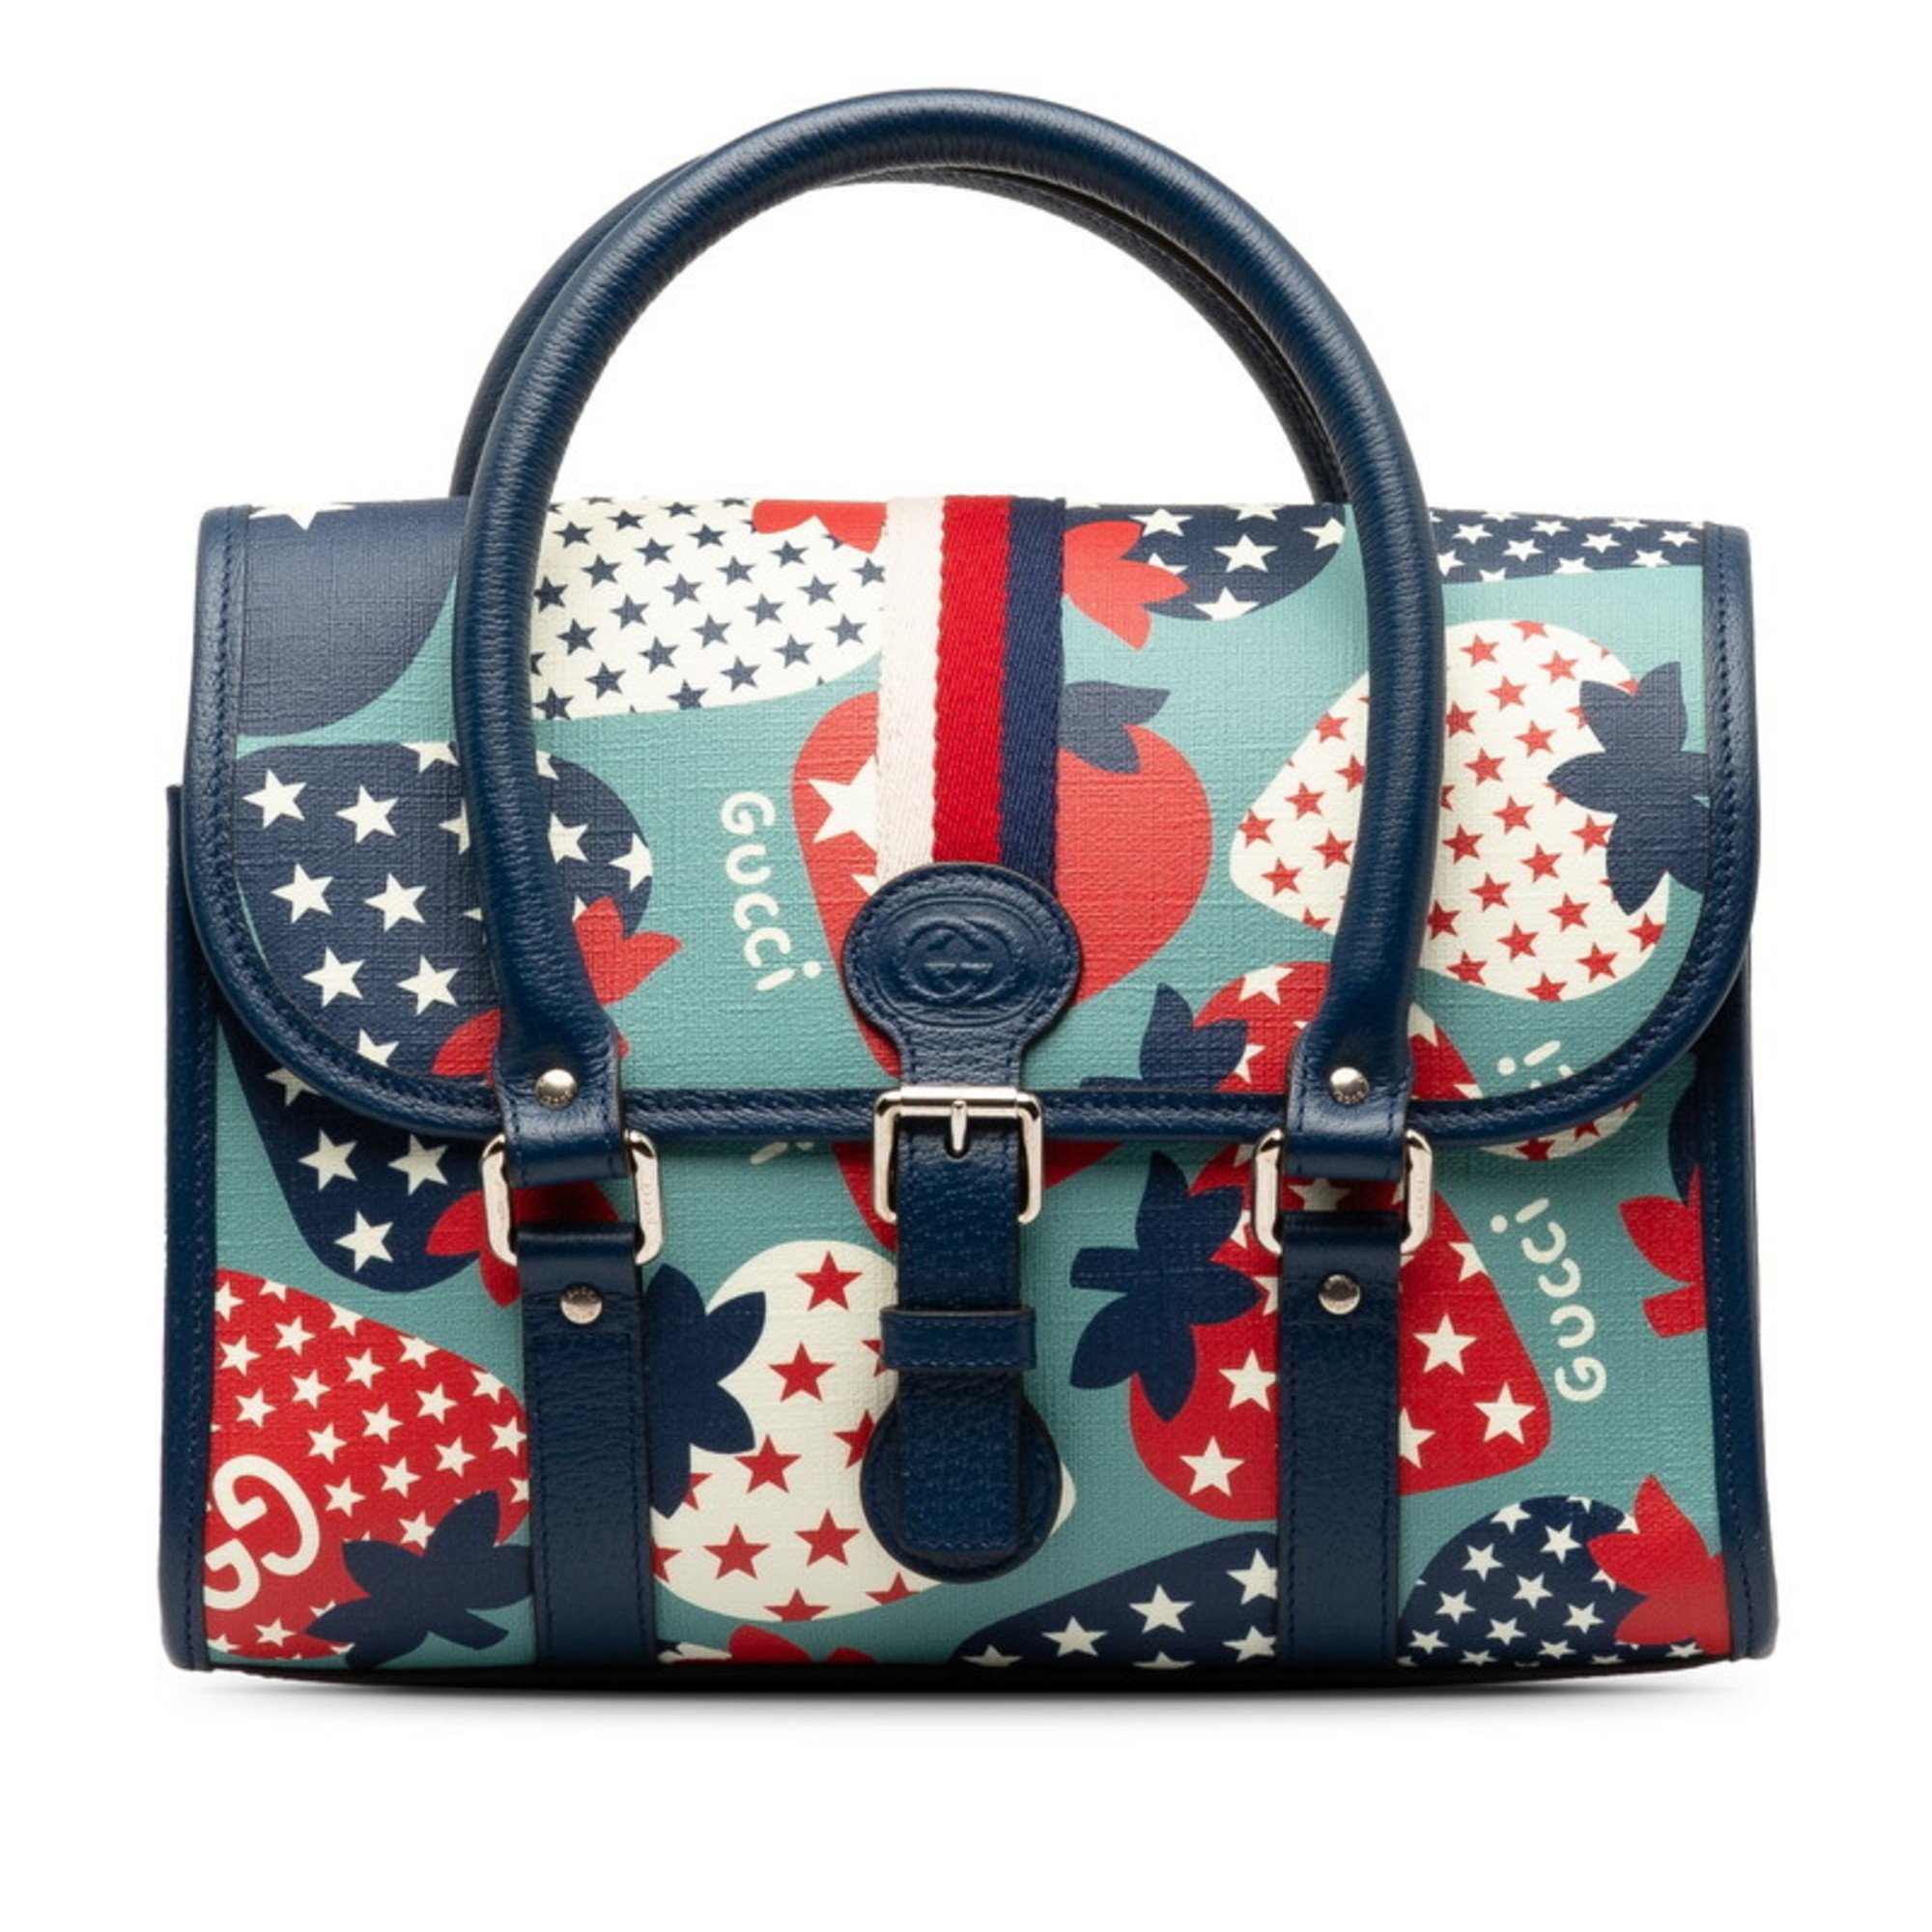 Gucci GG Strawberry Handbag 682720 Blue Multicolor PVC Leather Women's GUCCI